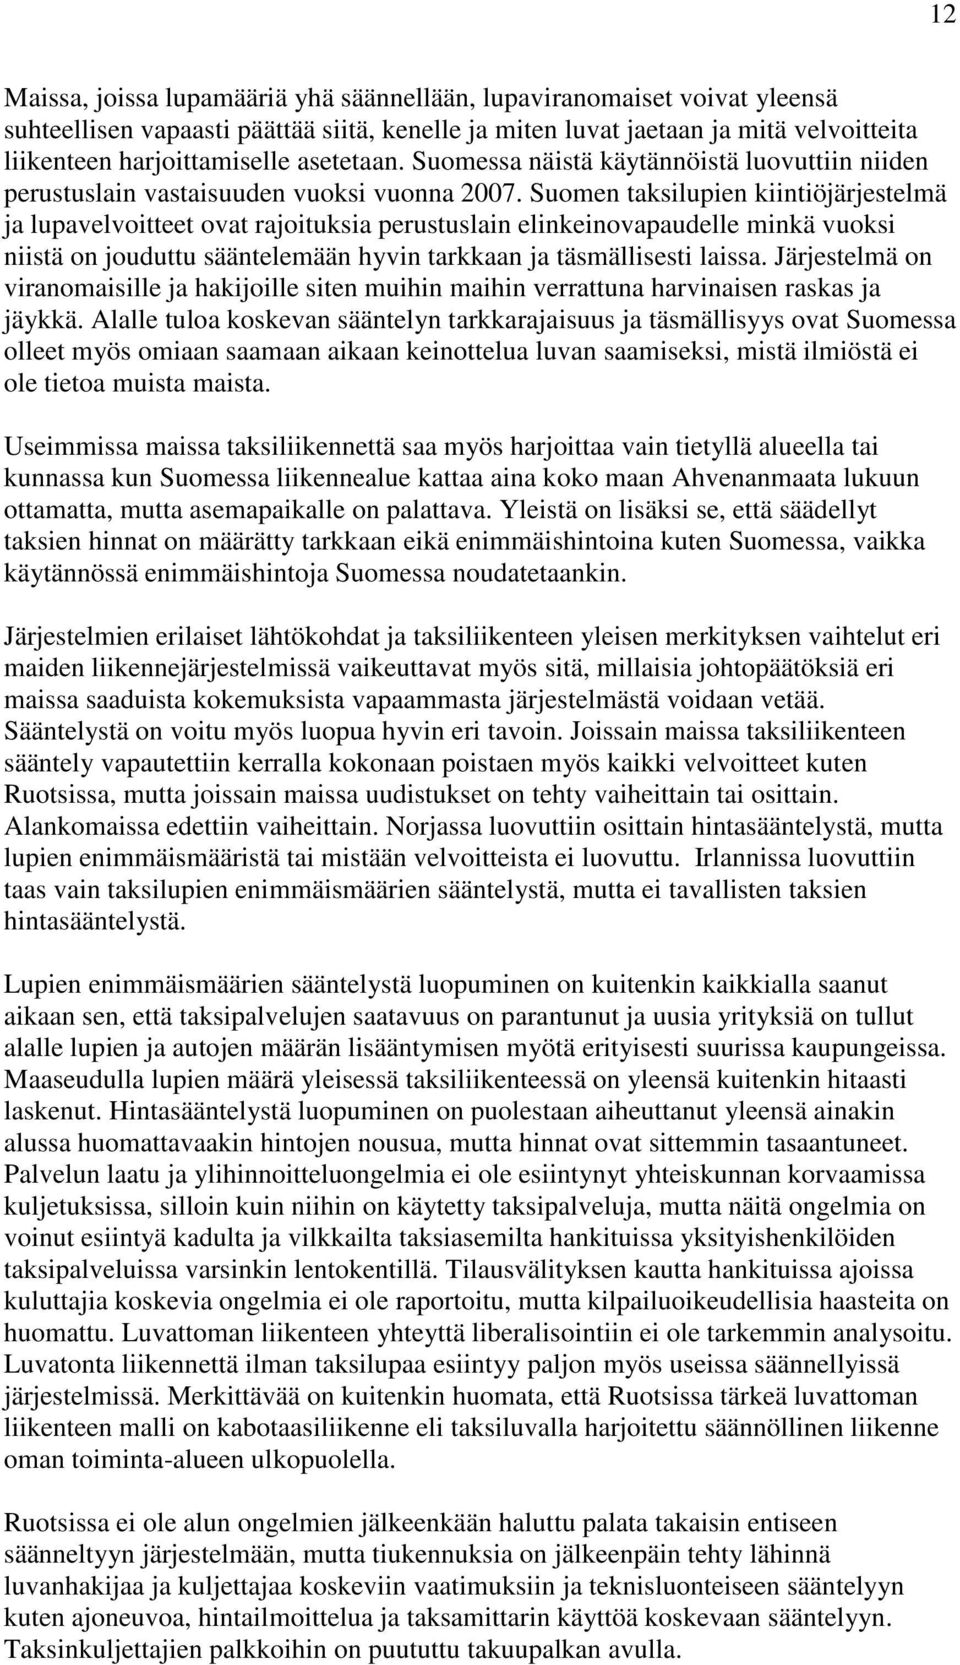 Suomen taksilupien kiintiöjärjestelmä ja lupavelvoitteet ovat rajoituksia perustuslain elinkeinovapaudelle minkä vuoksi niistä on jouduttu sääntelemään hyvin tarkkaan ja täsmällisesti laissa.